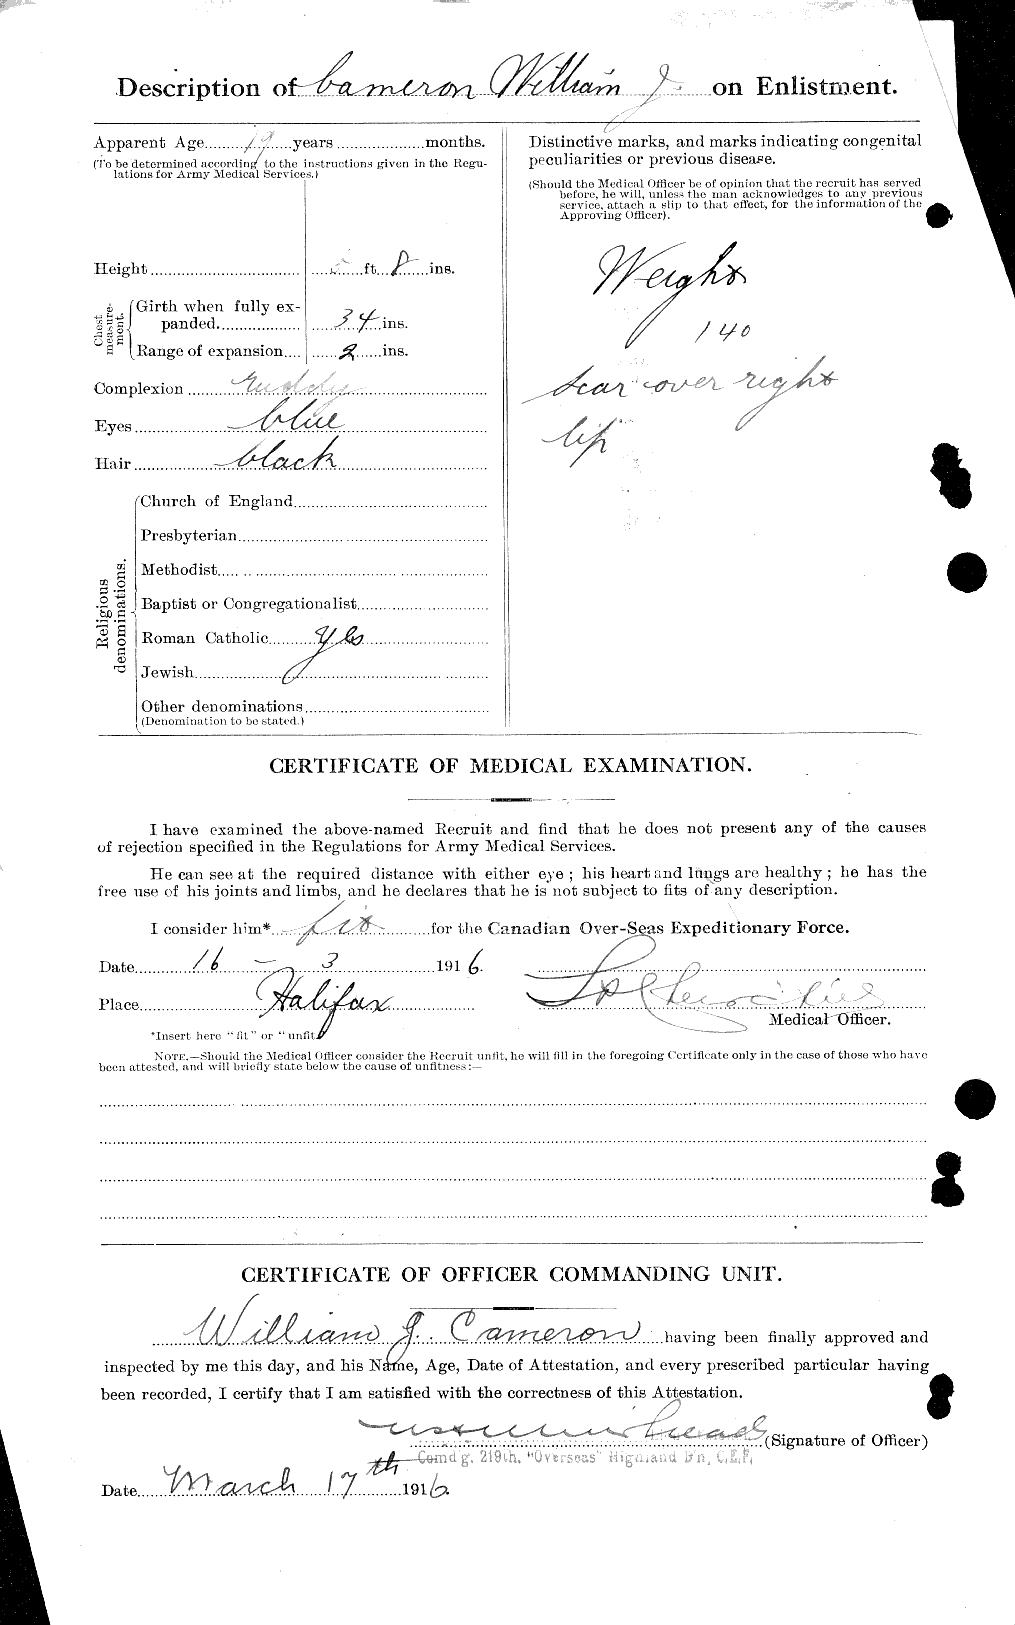 Dossiers du Personnel de la Première Guerre mondiale - CEC 003333b